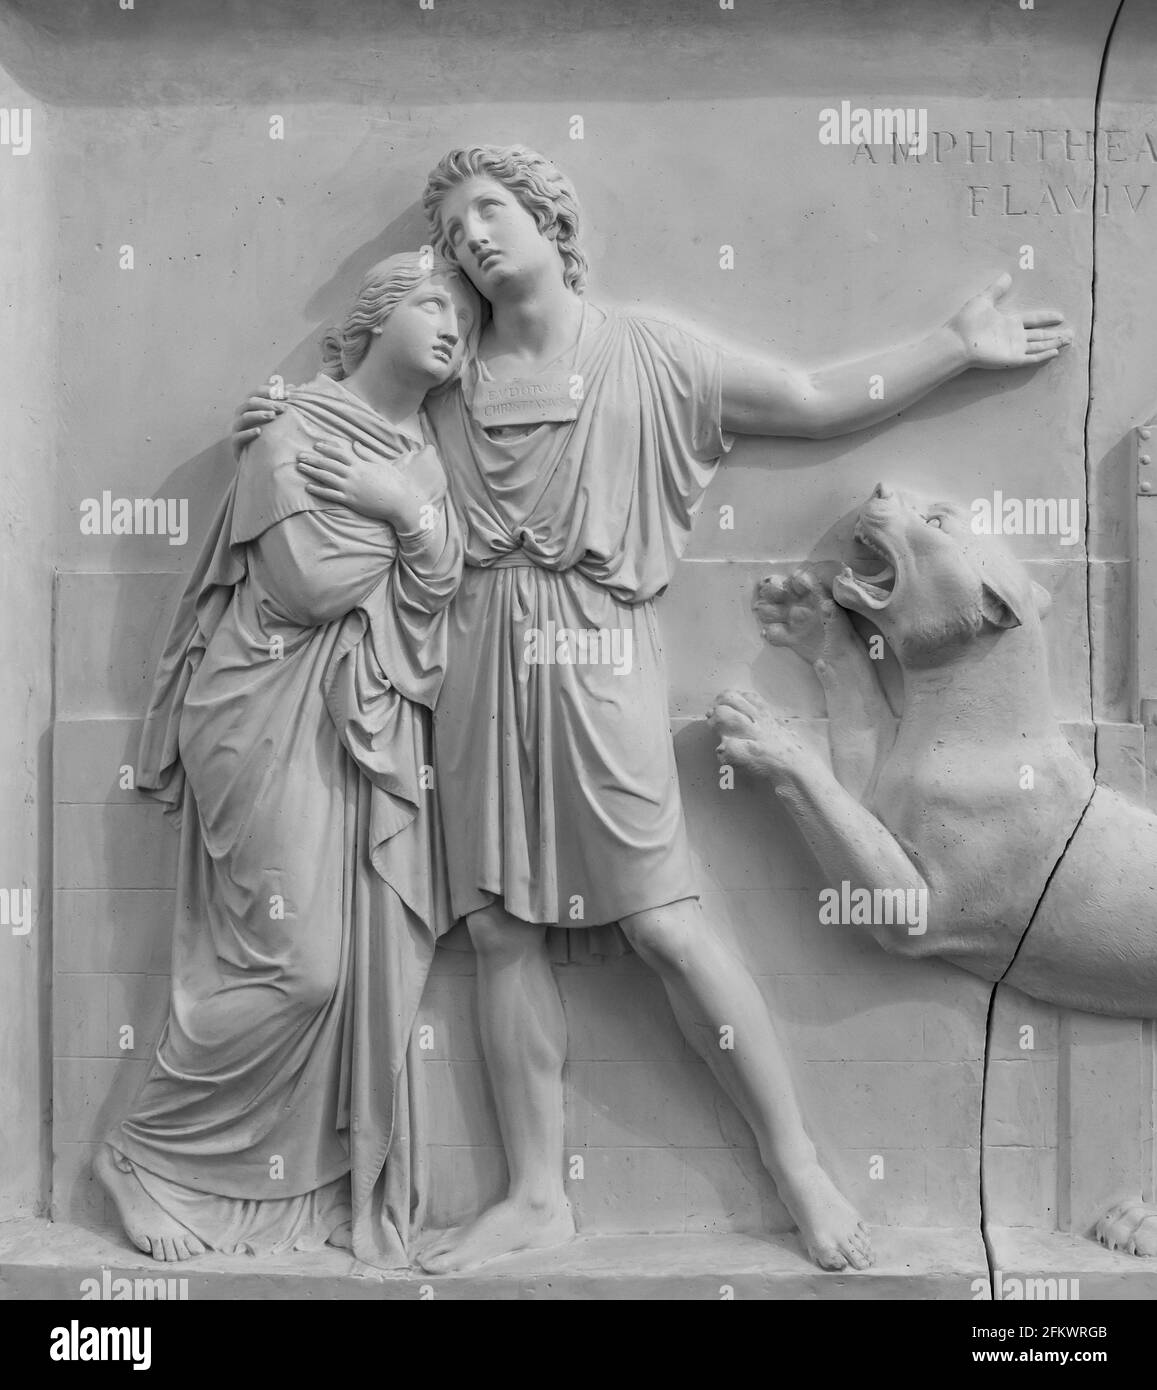 Schwarz-Weiß-Foto von Skulpturen auf Marmorwand geschnitzt Zeigt ein Paar, das sich während eines Angriffs von einem hält Löwin Stockfoto